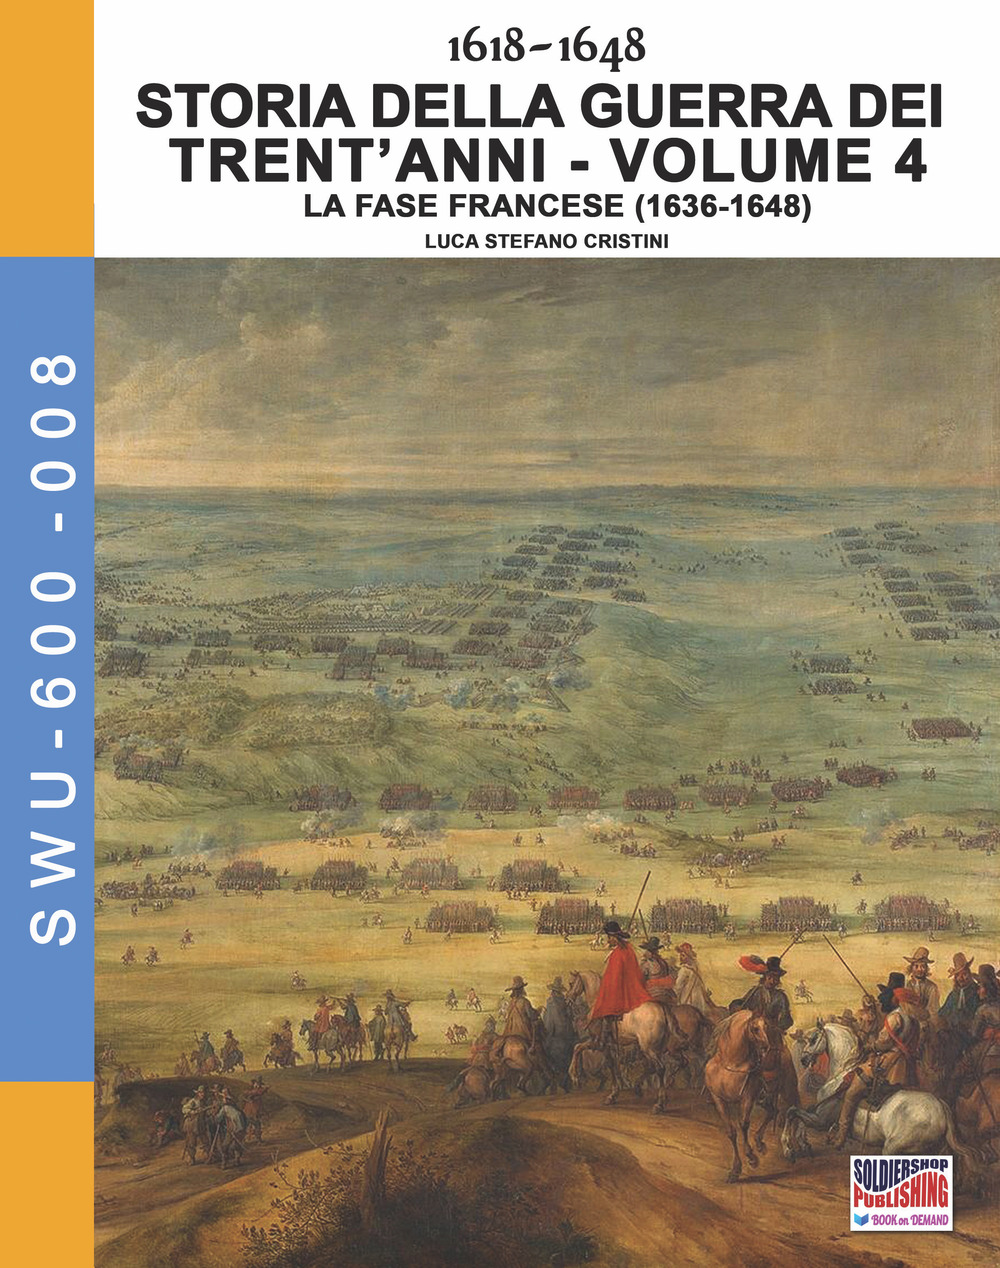 Storia della guerra dei trent'anni 1618-1648. Vol. 4: La fase Francese (1636-1648)